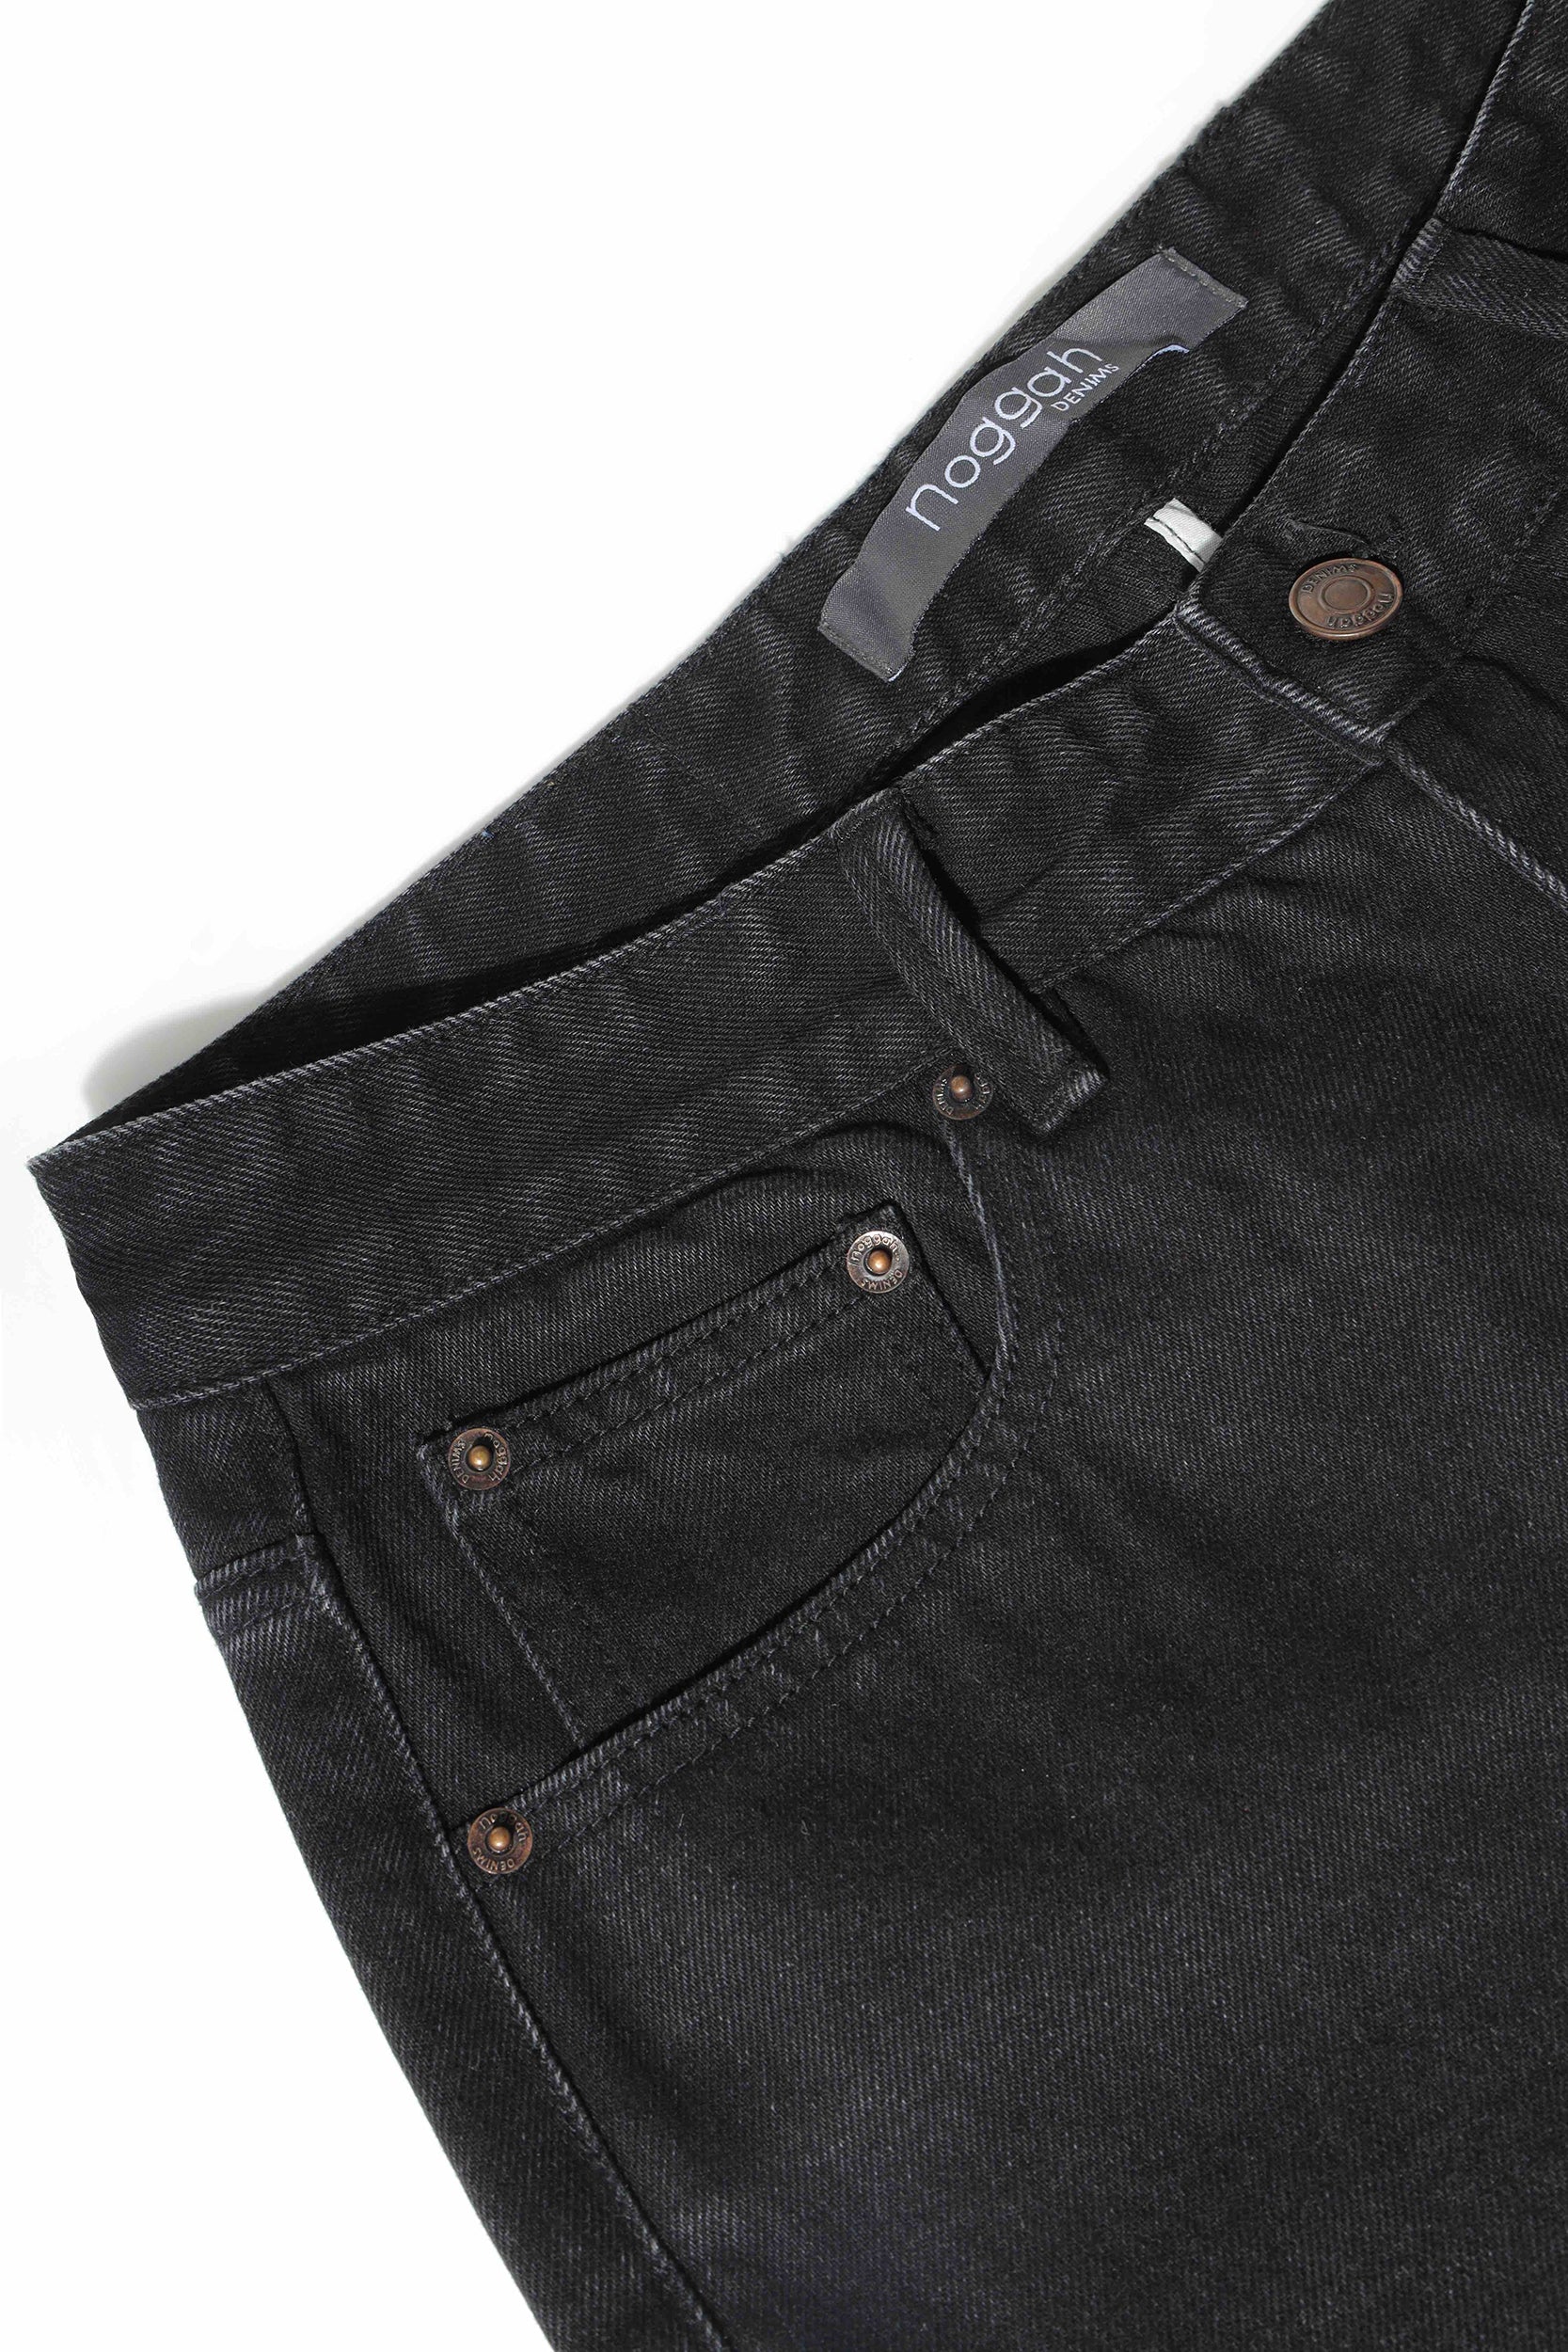 Emporio Armani TASCHE - Slim fit jeans - black - Zalando.co.uk